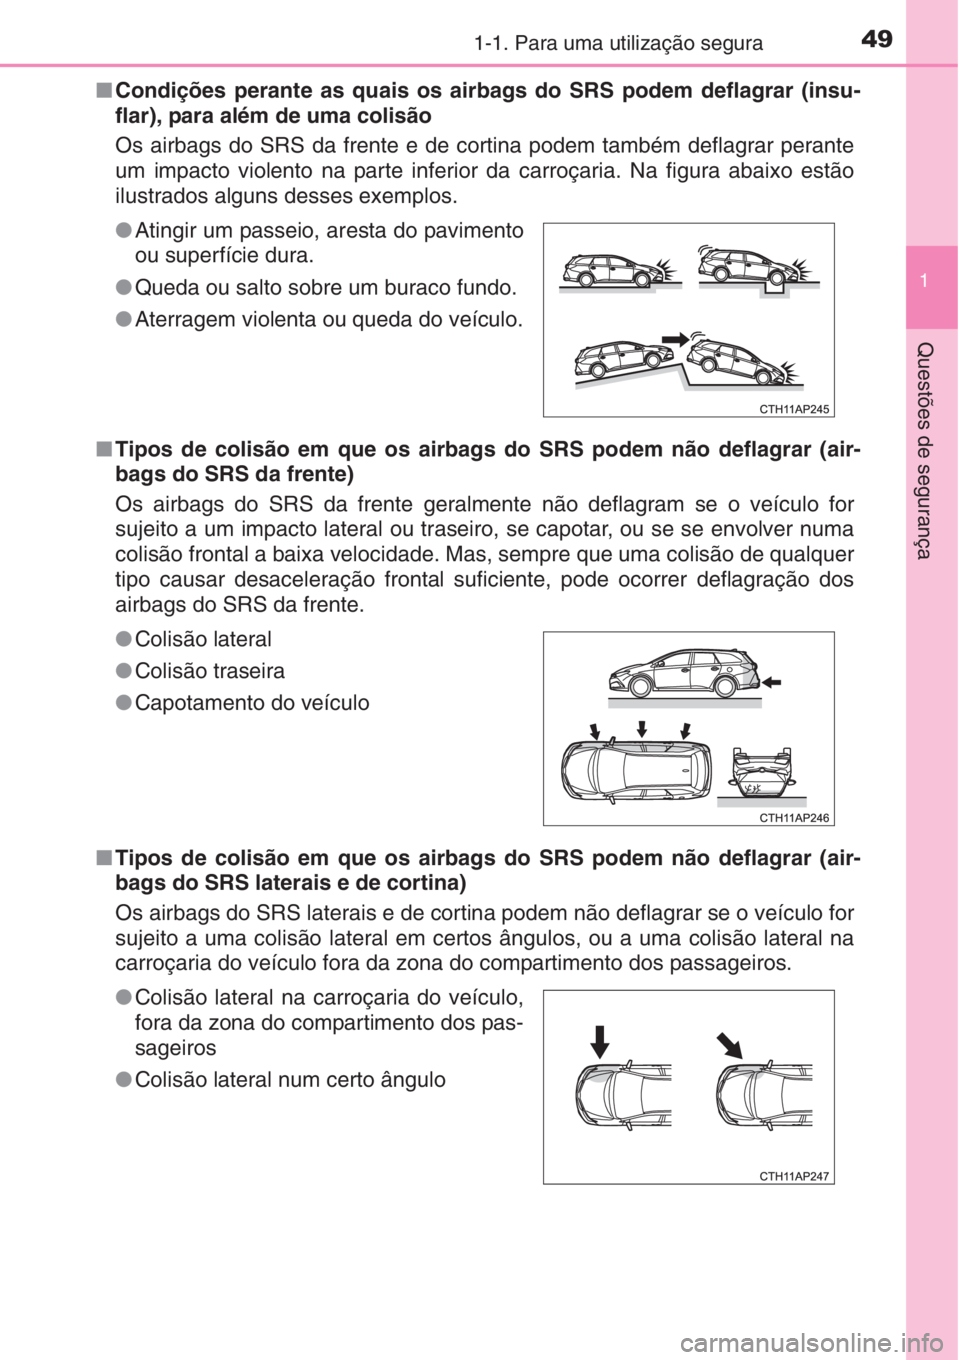 TOYOTA AURIS 2016  Manual de utilização (in Portuguese) 491-1. Para uma utilização segura
1
Questões de segurança
■Condições perante as quais os airbags do SRS podem deflagrar (insu-
flar), para além de uma colisão 
Os airbags do SRS da frente e 